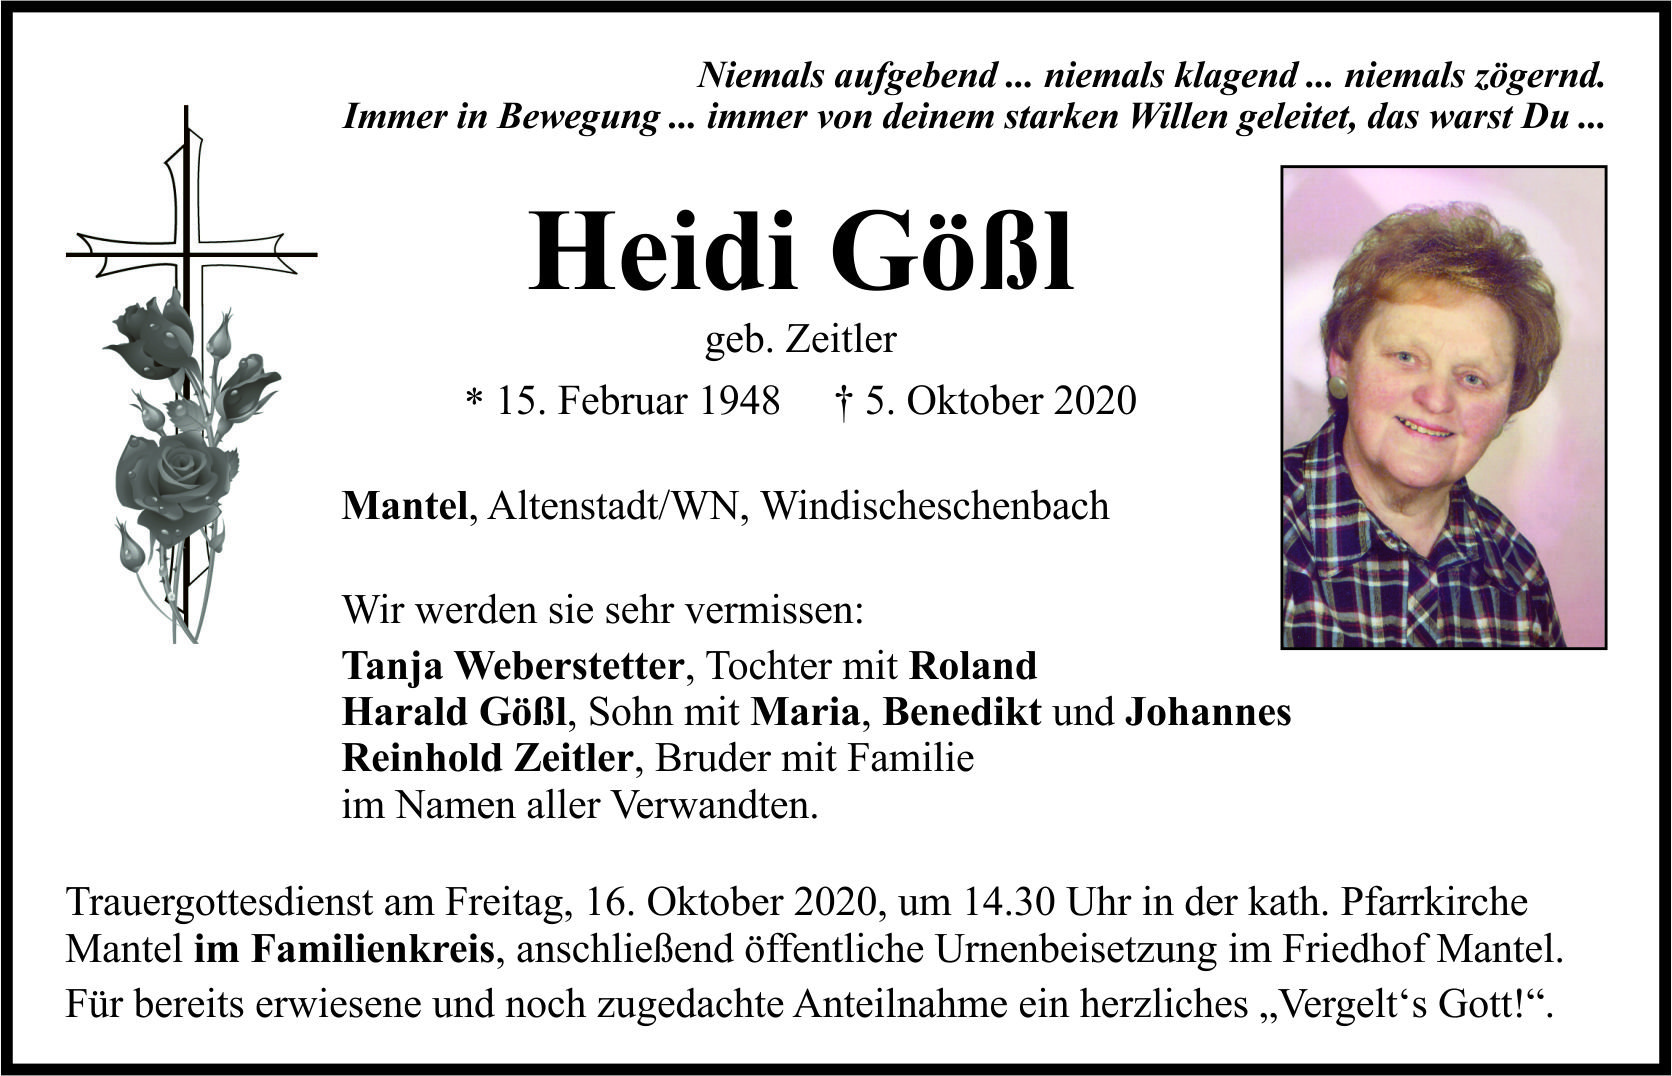 Traueranzeige Heidi Gößl, Mantel